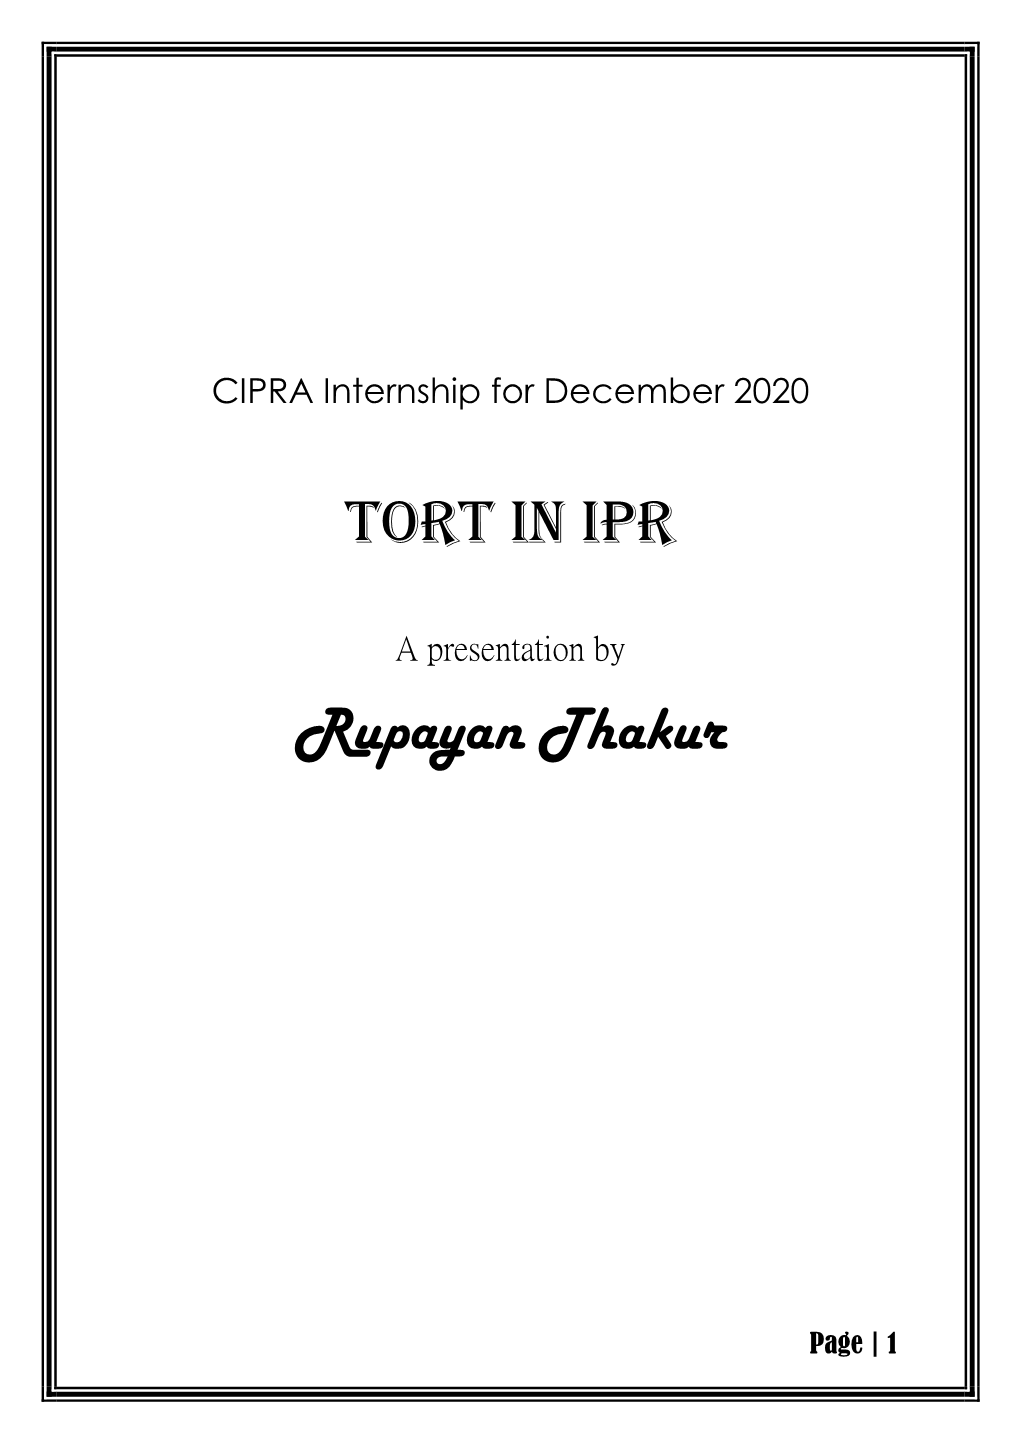 Tort in IPR Rupayan Thakur